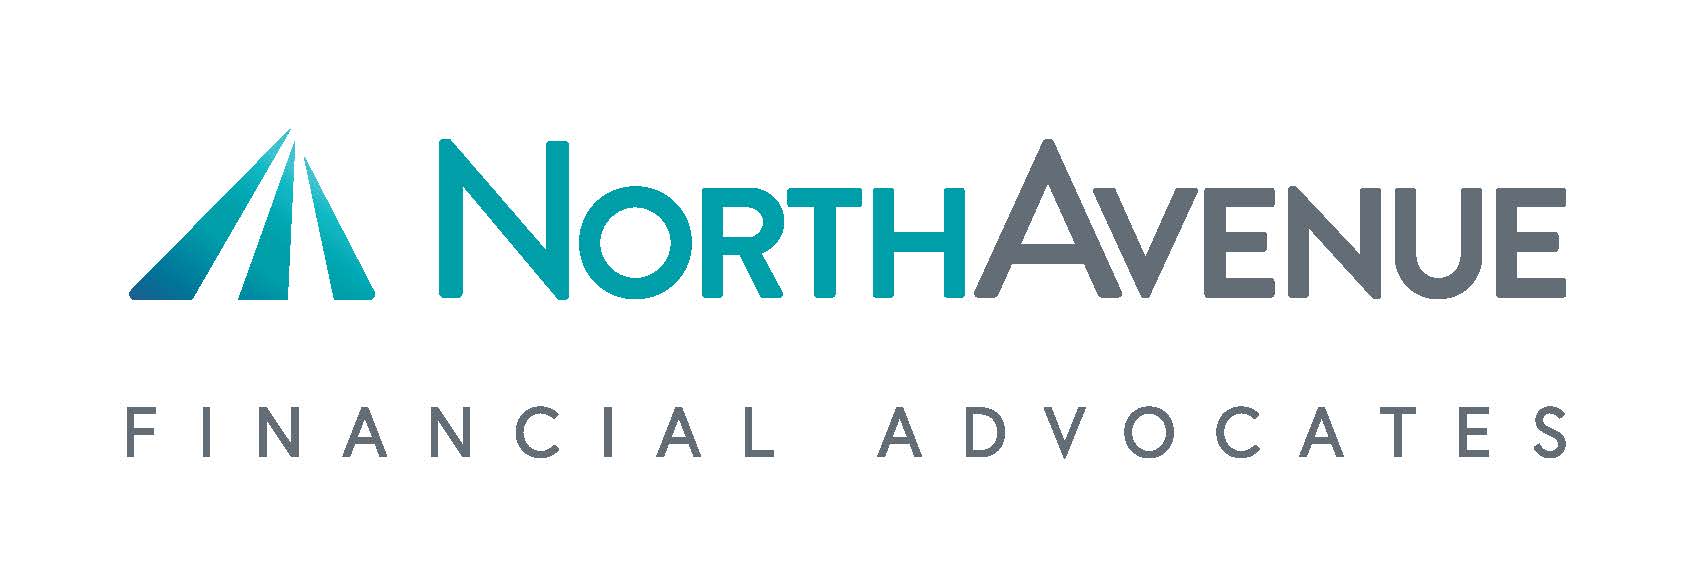 NorthAvenue Financial Advocates